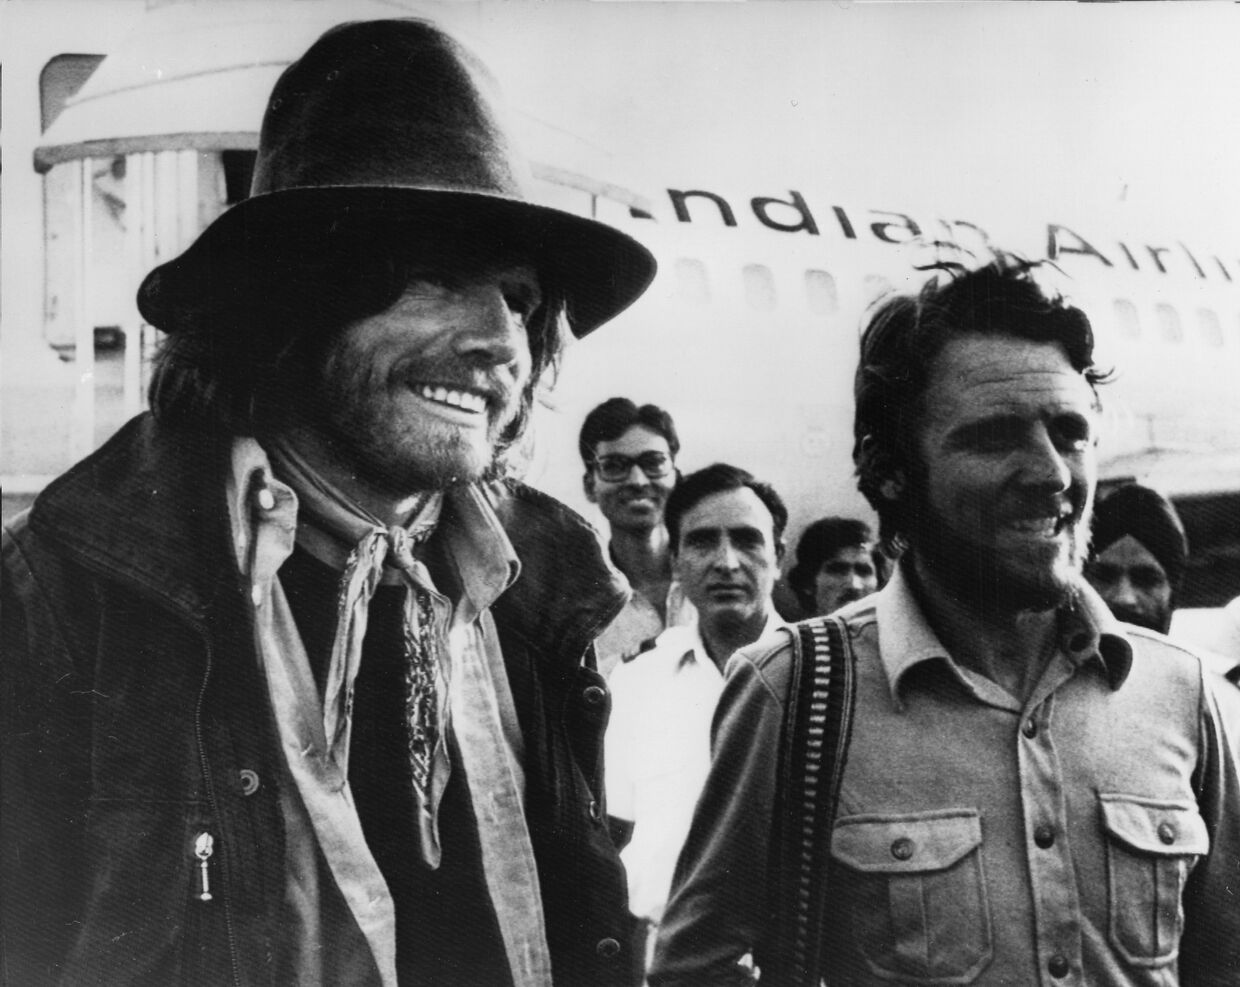 21 мая 1978. Альпинисты Райнхольд Месснер и Петер Хабелер в аэропорту Нью-Дели после бескислородного восхождения на Эверест